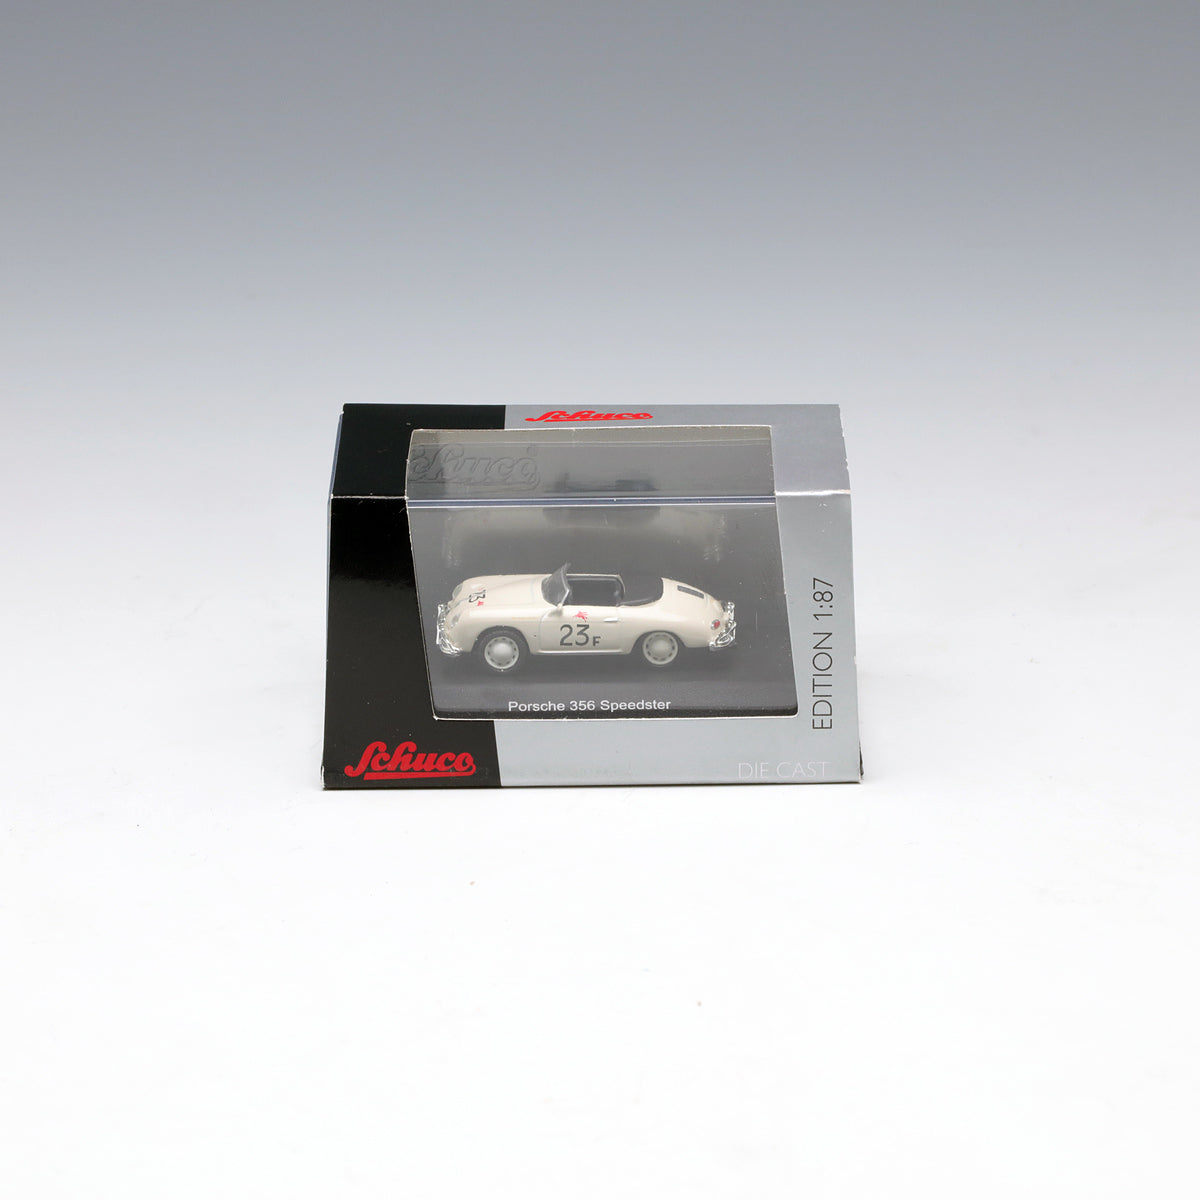 Schuco 1:87 Porsche 356 Speedster Jimmy s Speedster 452615300